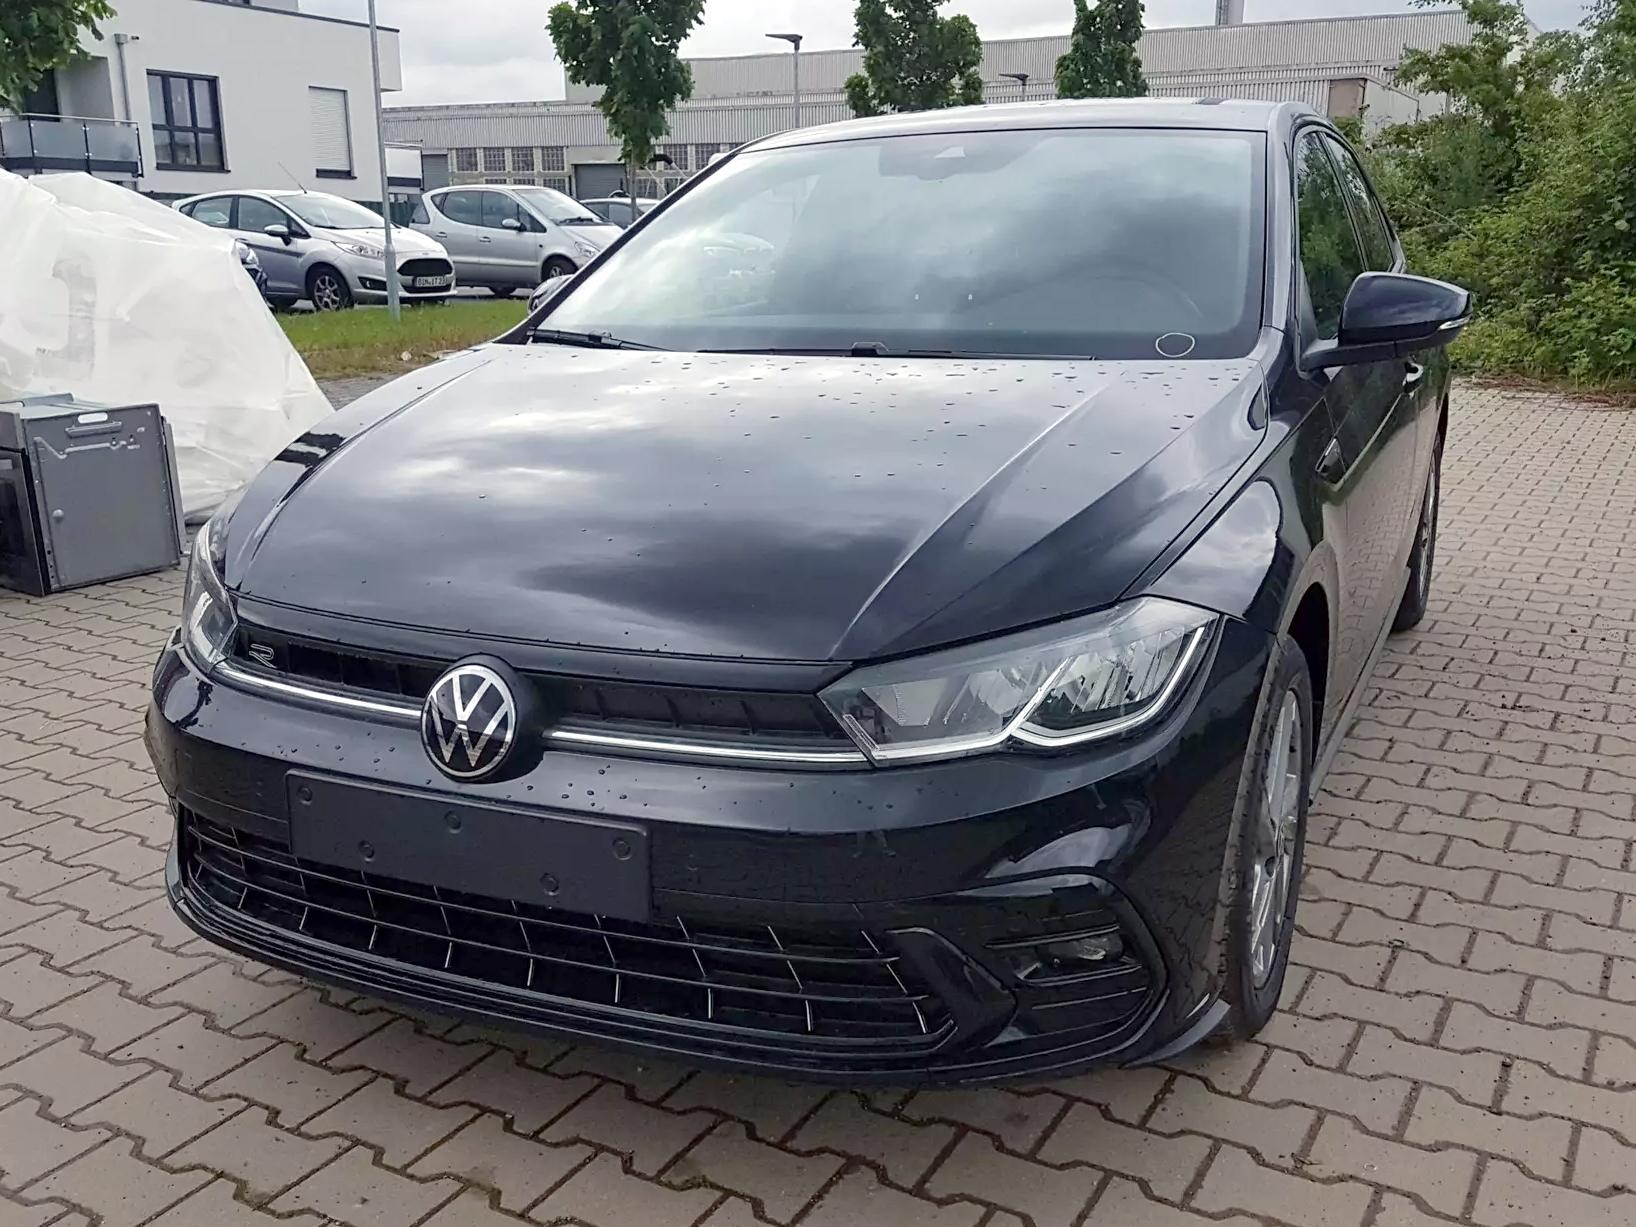 Spiegel für VW Polo günstig bestellen